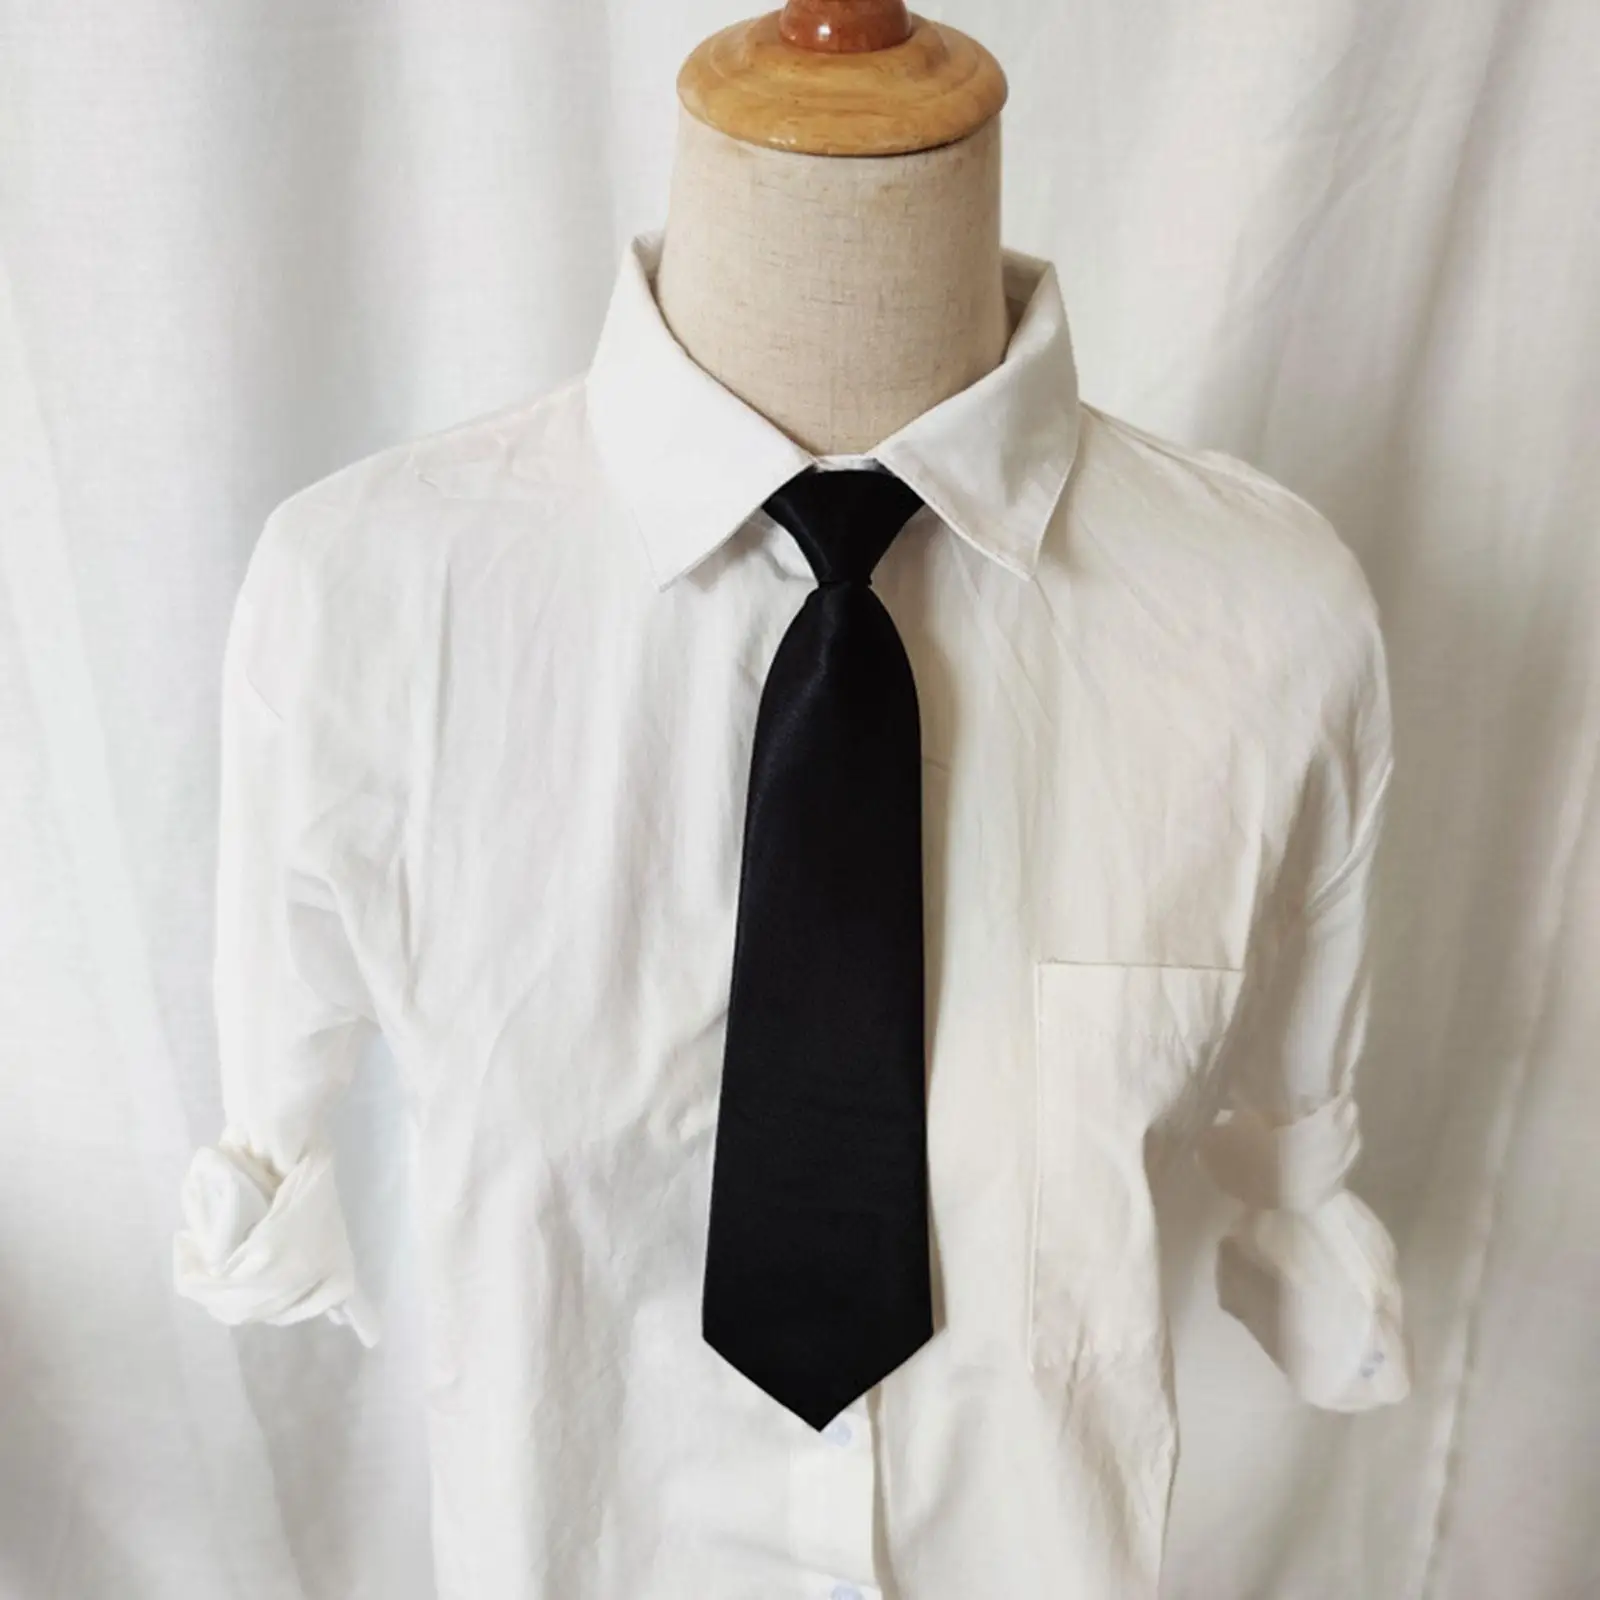 Corbata delgada elástica de poliéster para niños, corbata de cuello para niños, corbata de color negro para niños, corbata de boda para bebés